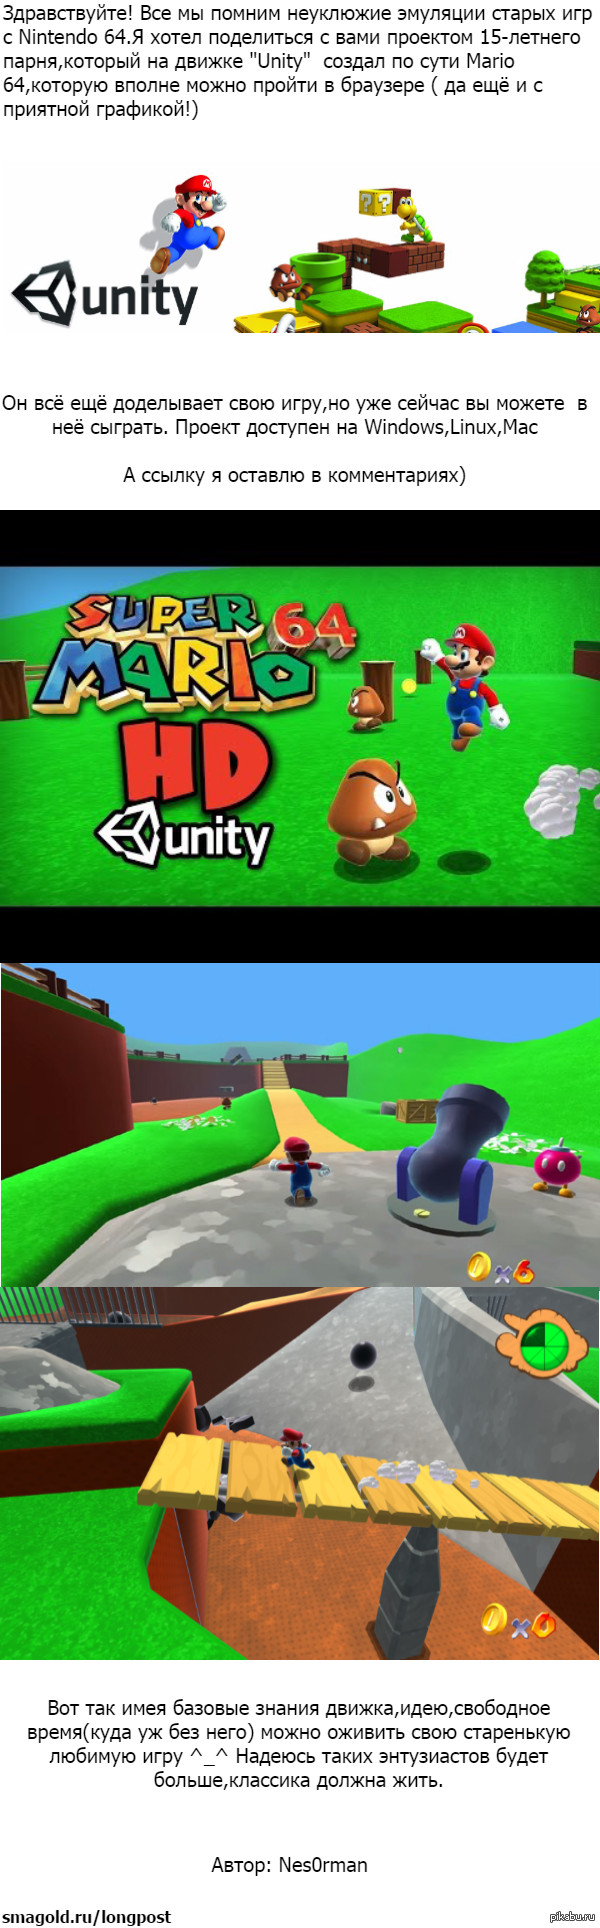 Mario 64  Unity    Nintendo :D